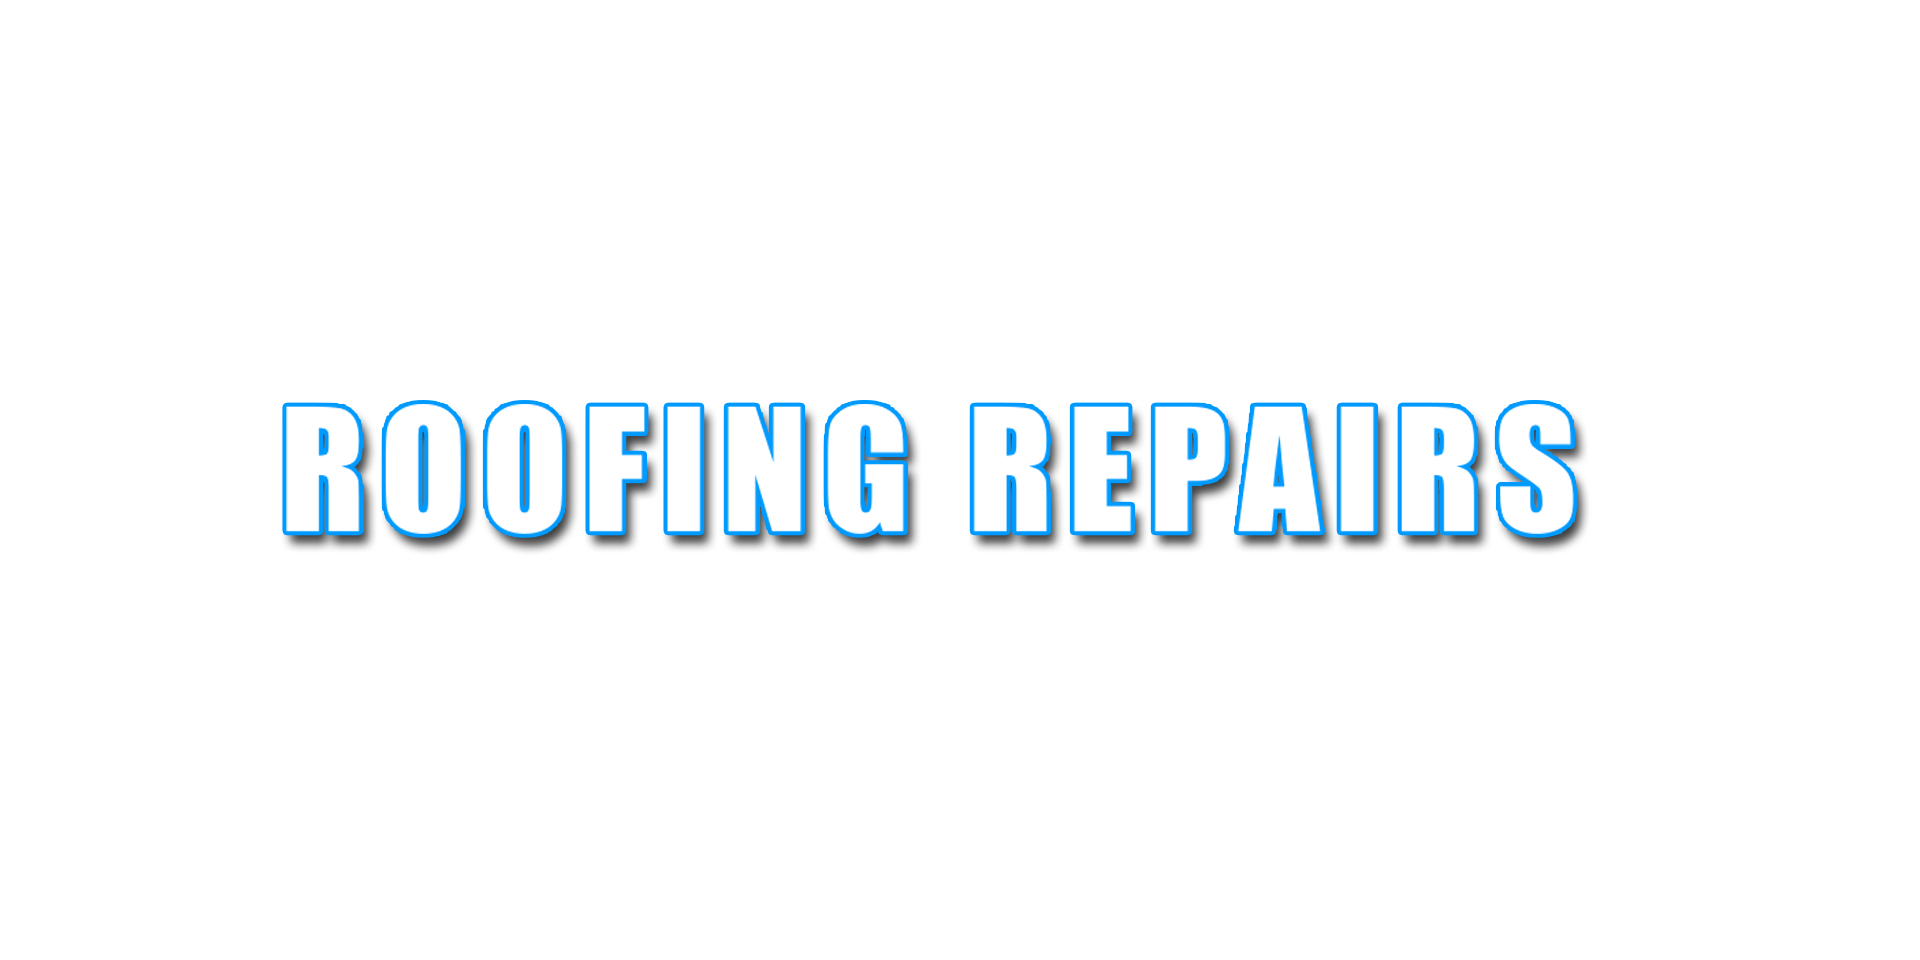 ROOFING REPAIRS